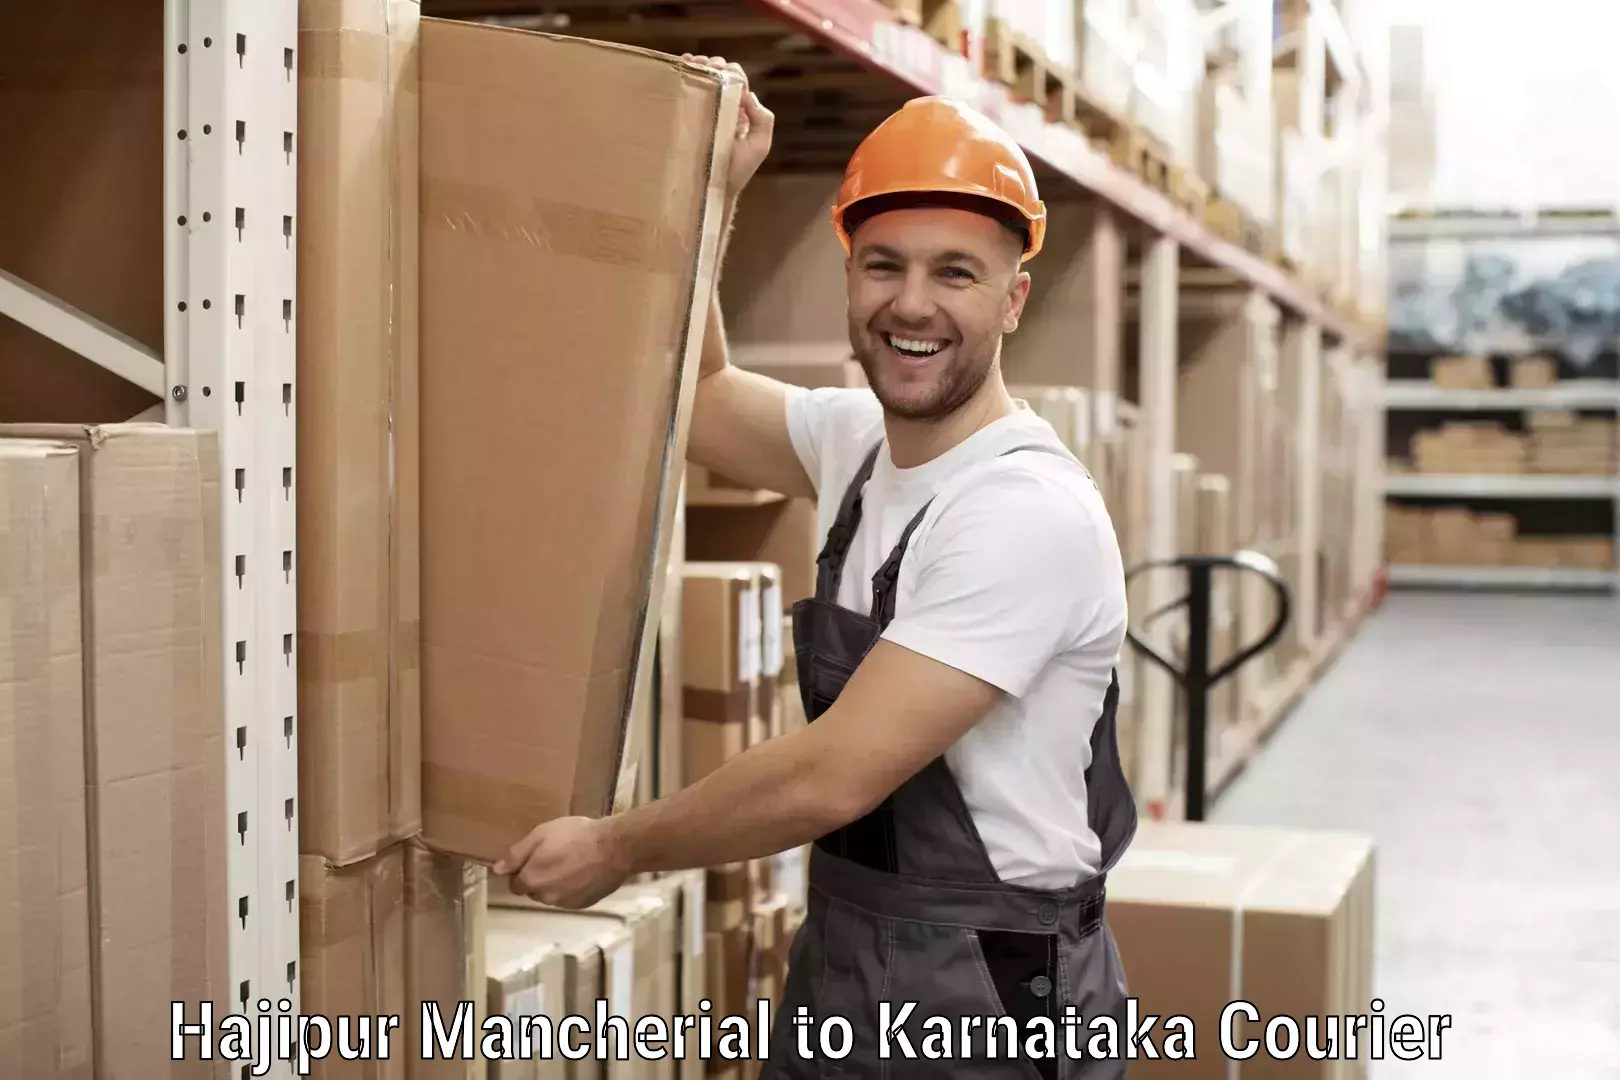 Affordable shipping solutions Hajipur Mancherial to Karnataka